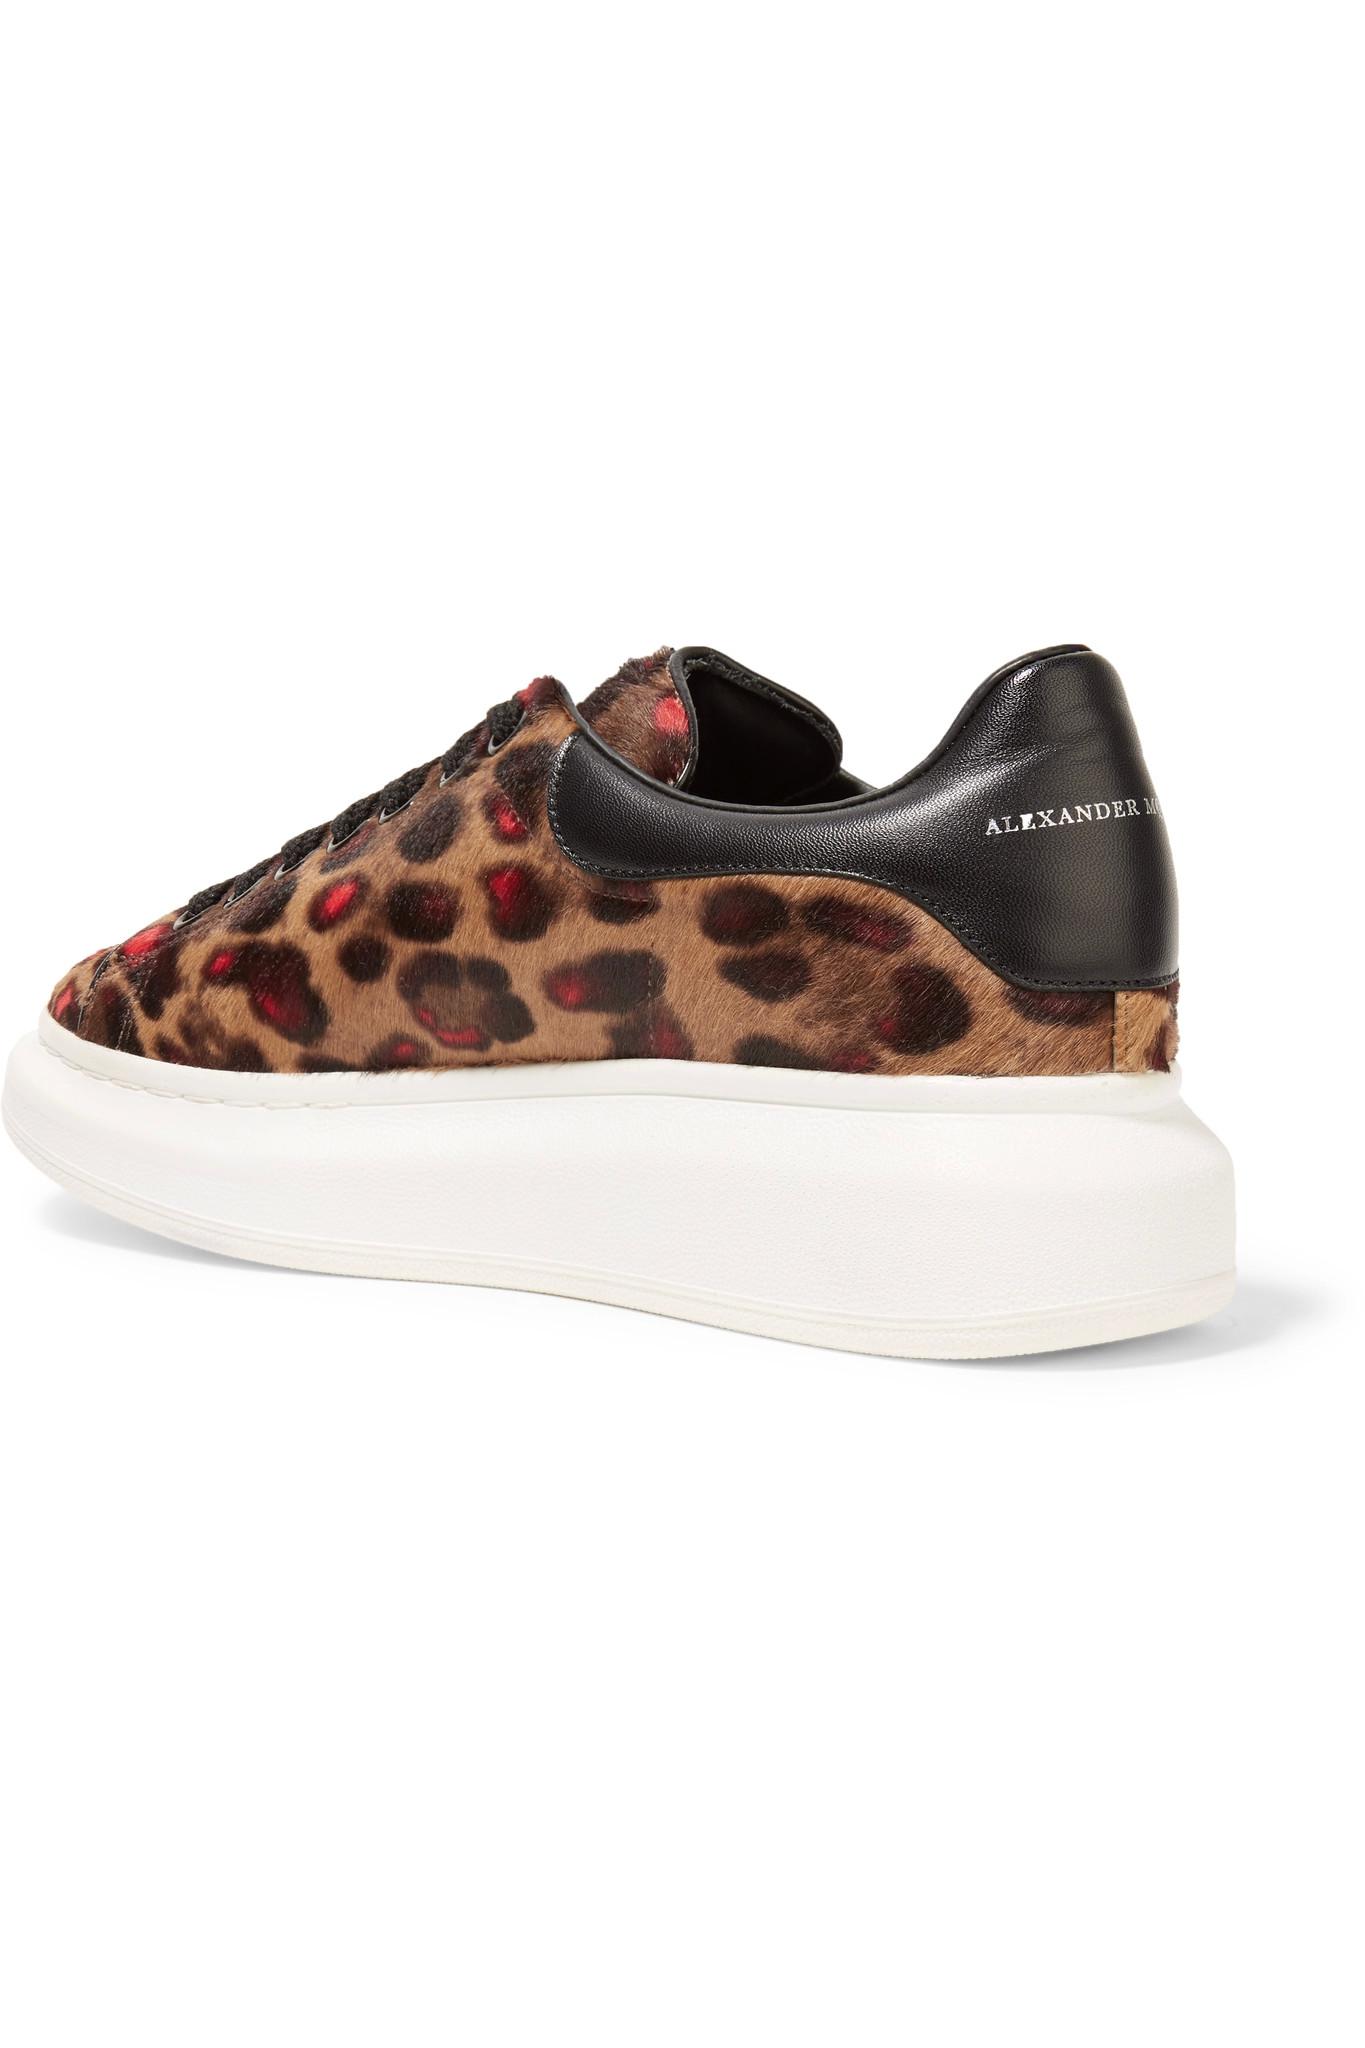 leopard print alexander mcqueen sneakers